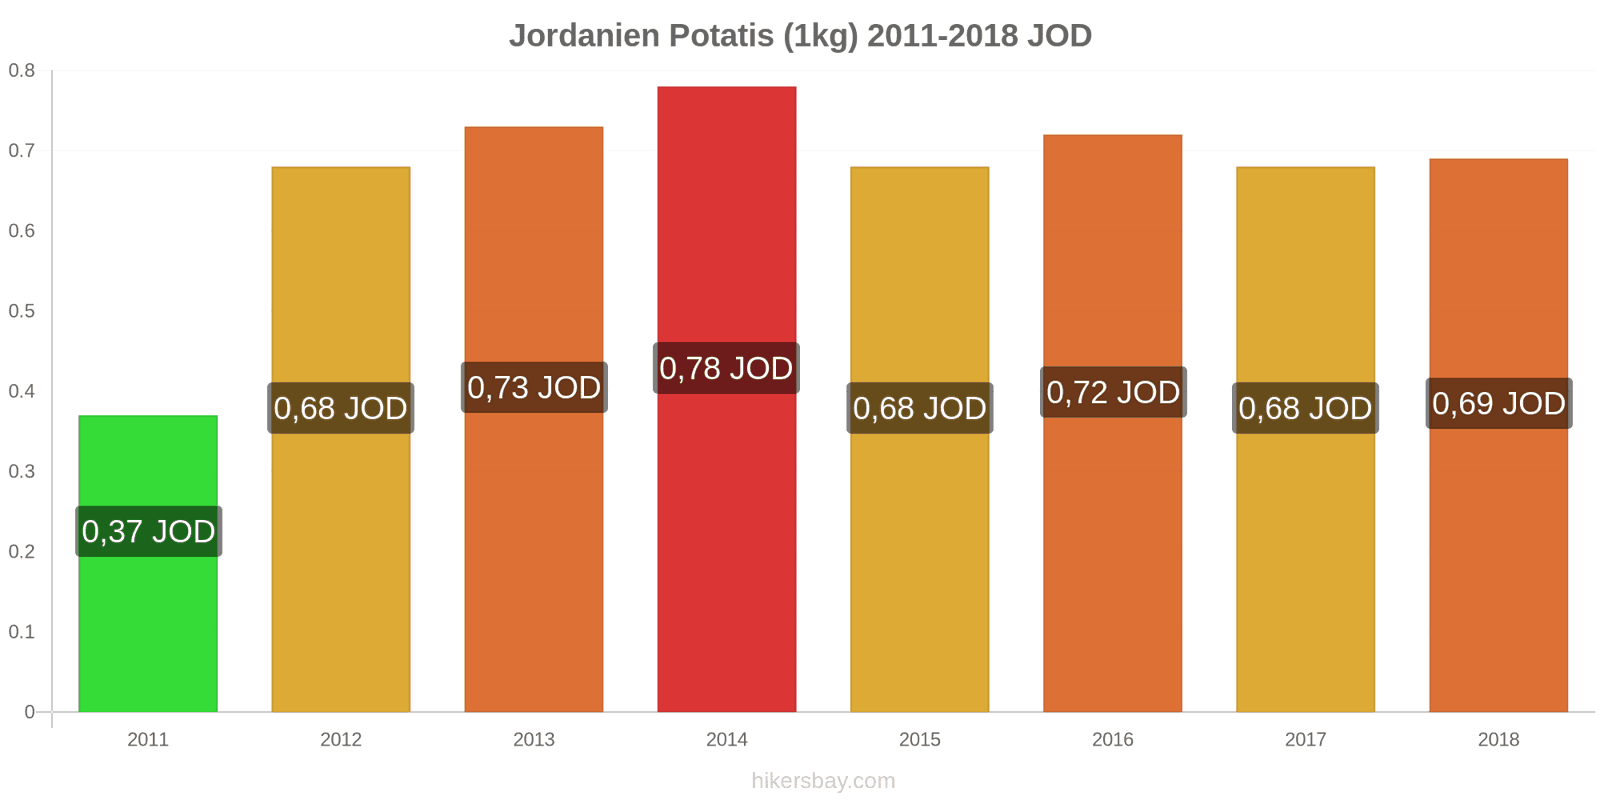 Jordanien prisändringar Potatis (1kg) hikersbay.com